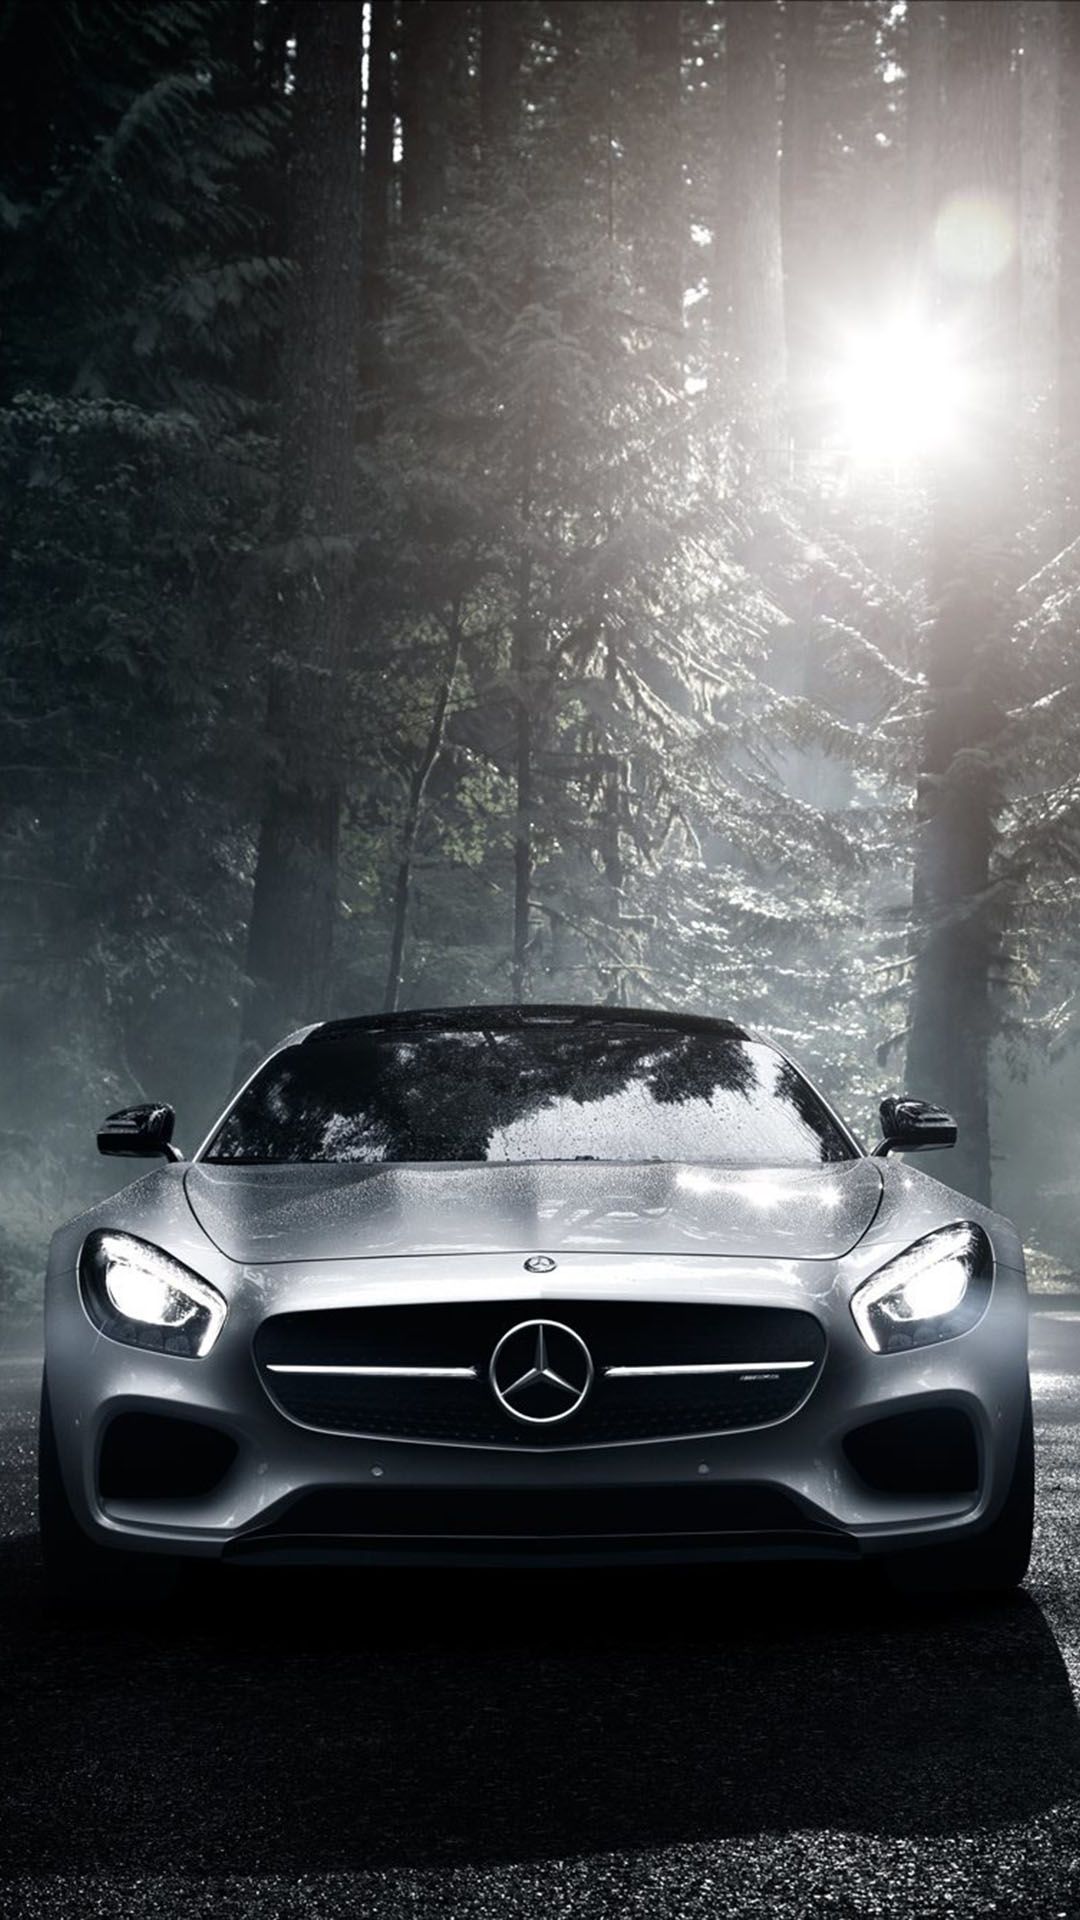 Mercedes Benz Amg gt iPhone Wallpaper .com